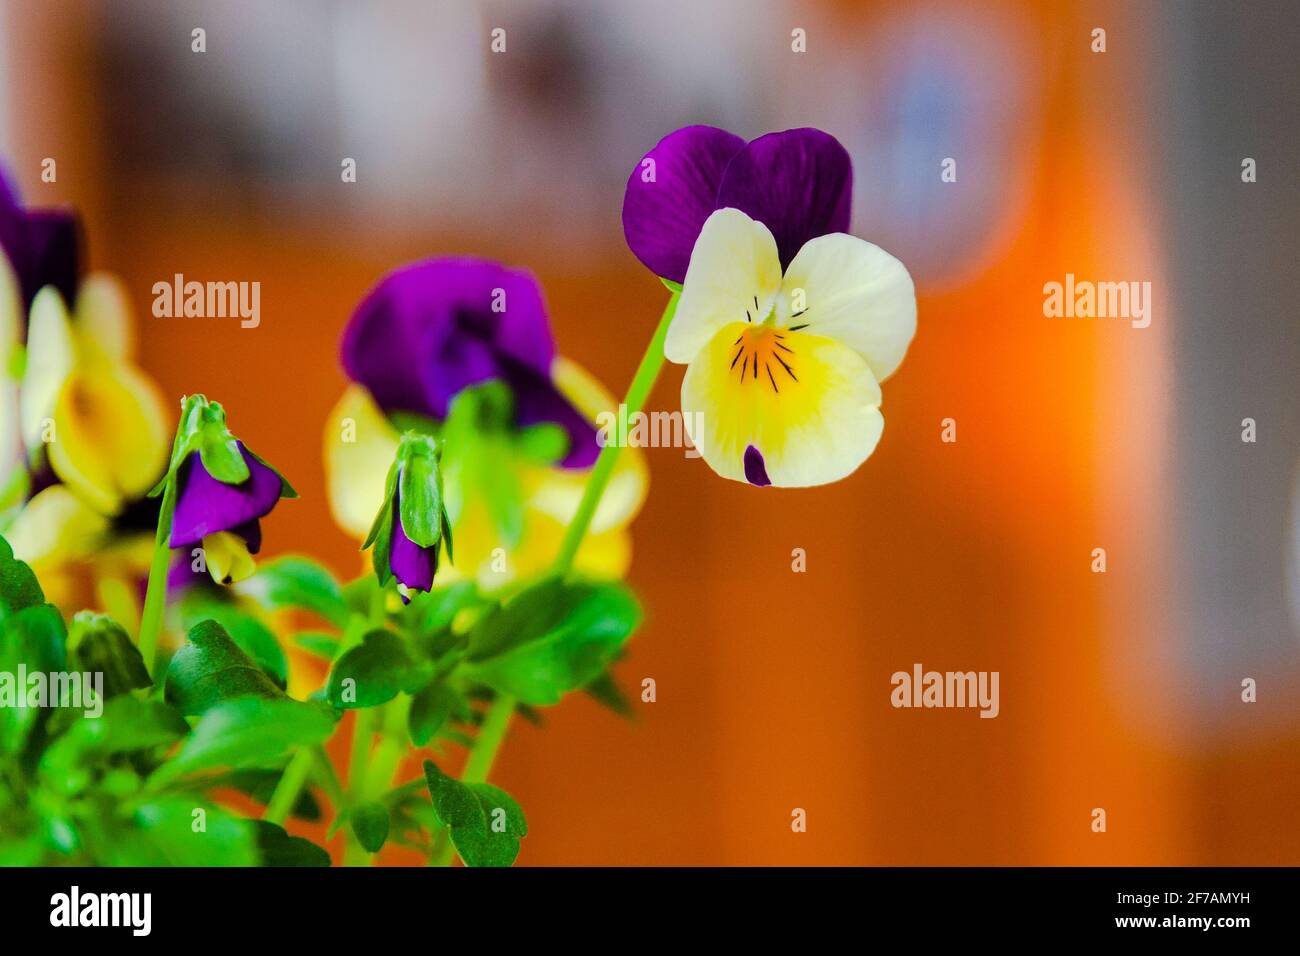 Mini-pansies jaune-violet dans une casserole. Décoration printanière. Les premières fleurs. Profondeur de champ. Banque D'Images